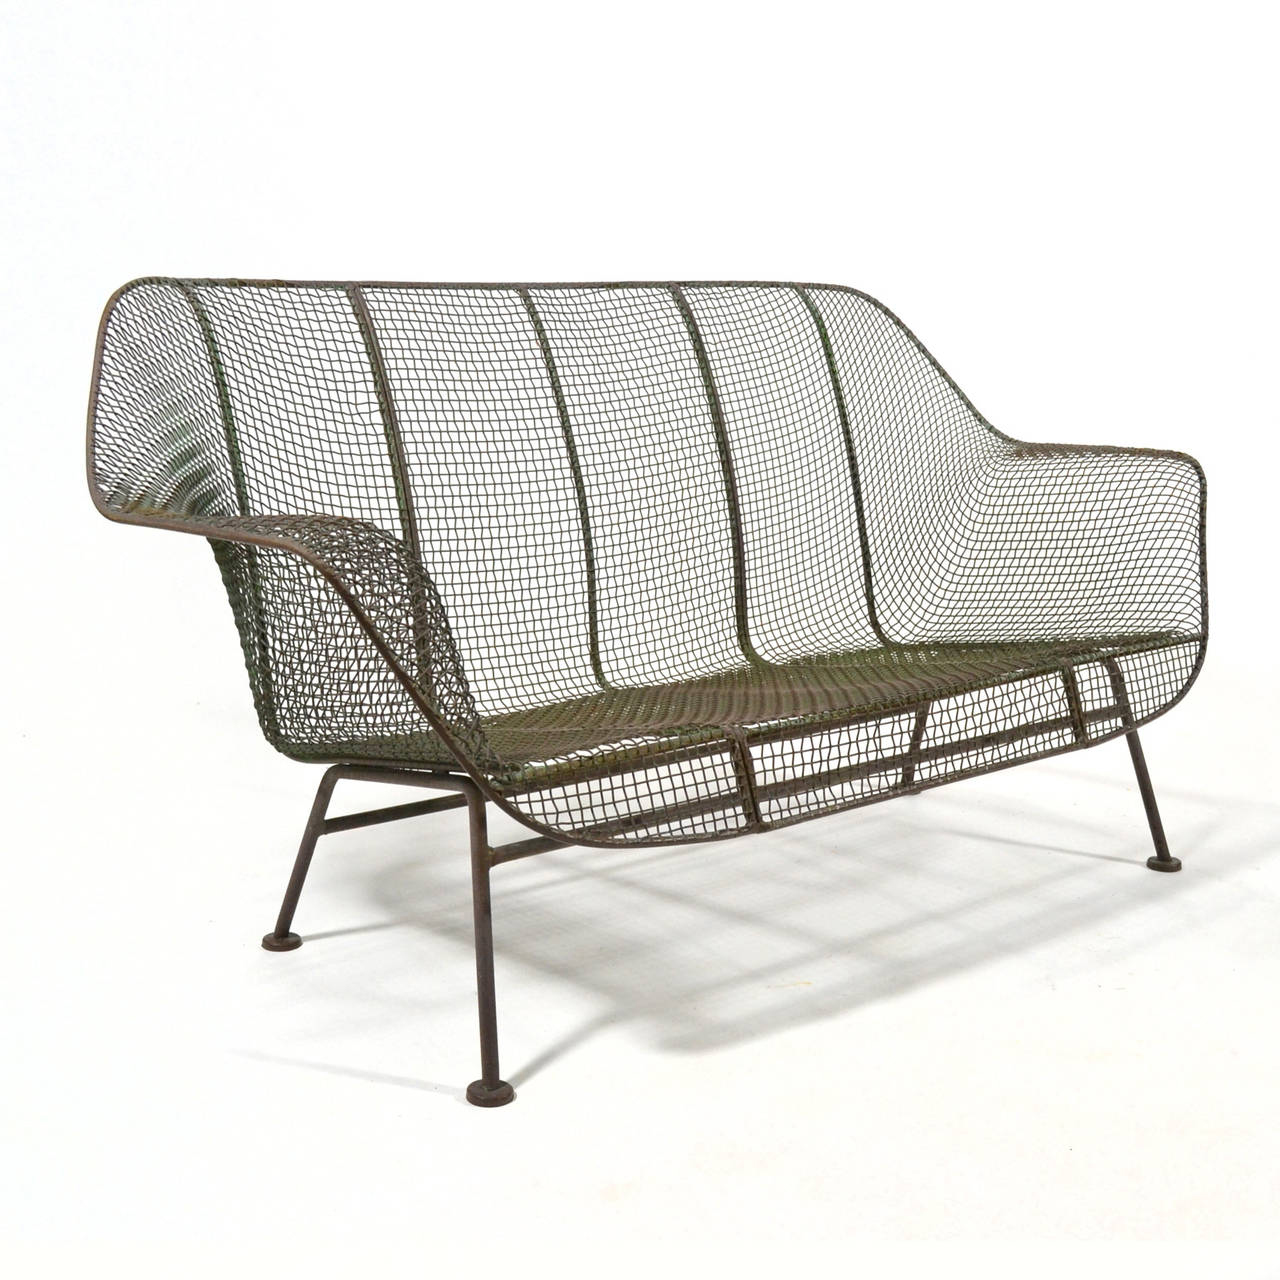 Modern Outdoor Furniture The Return Of Postwar Vintage In Design